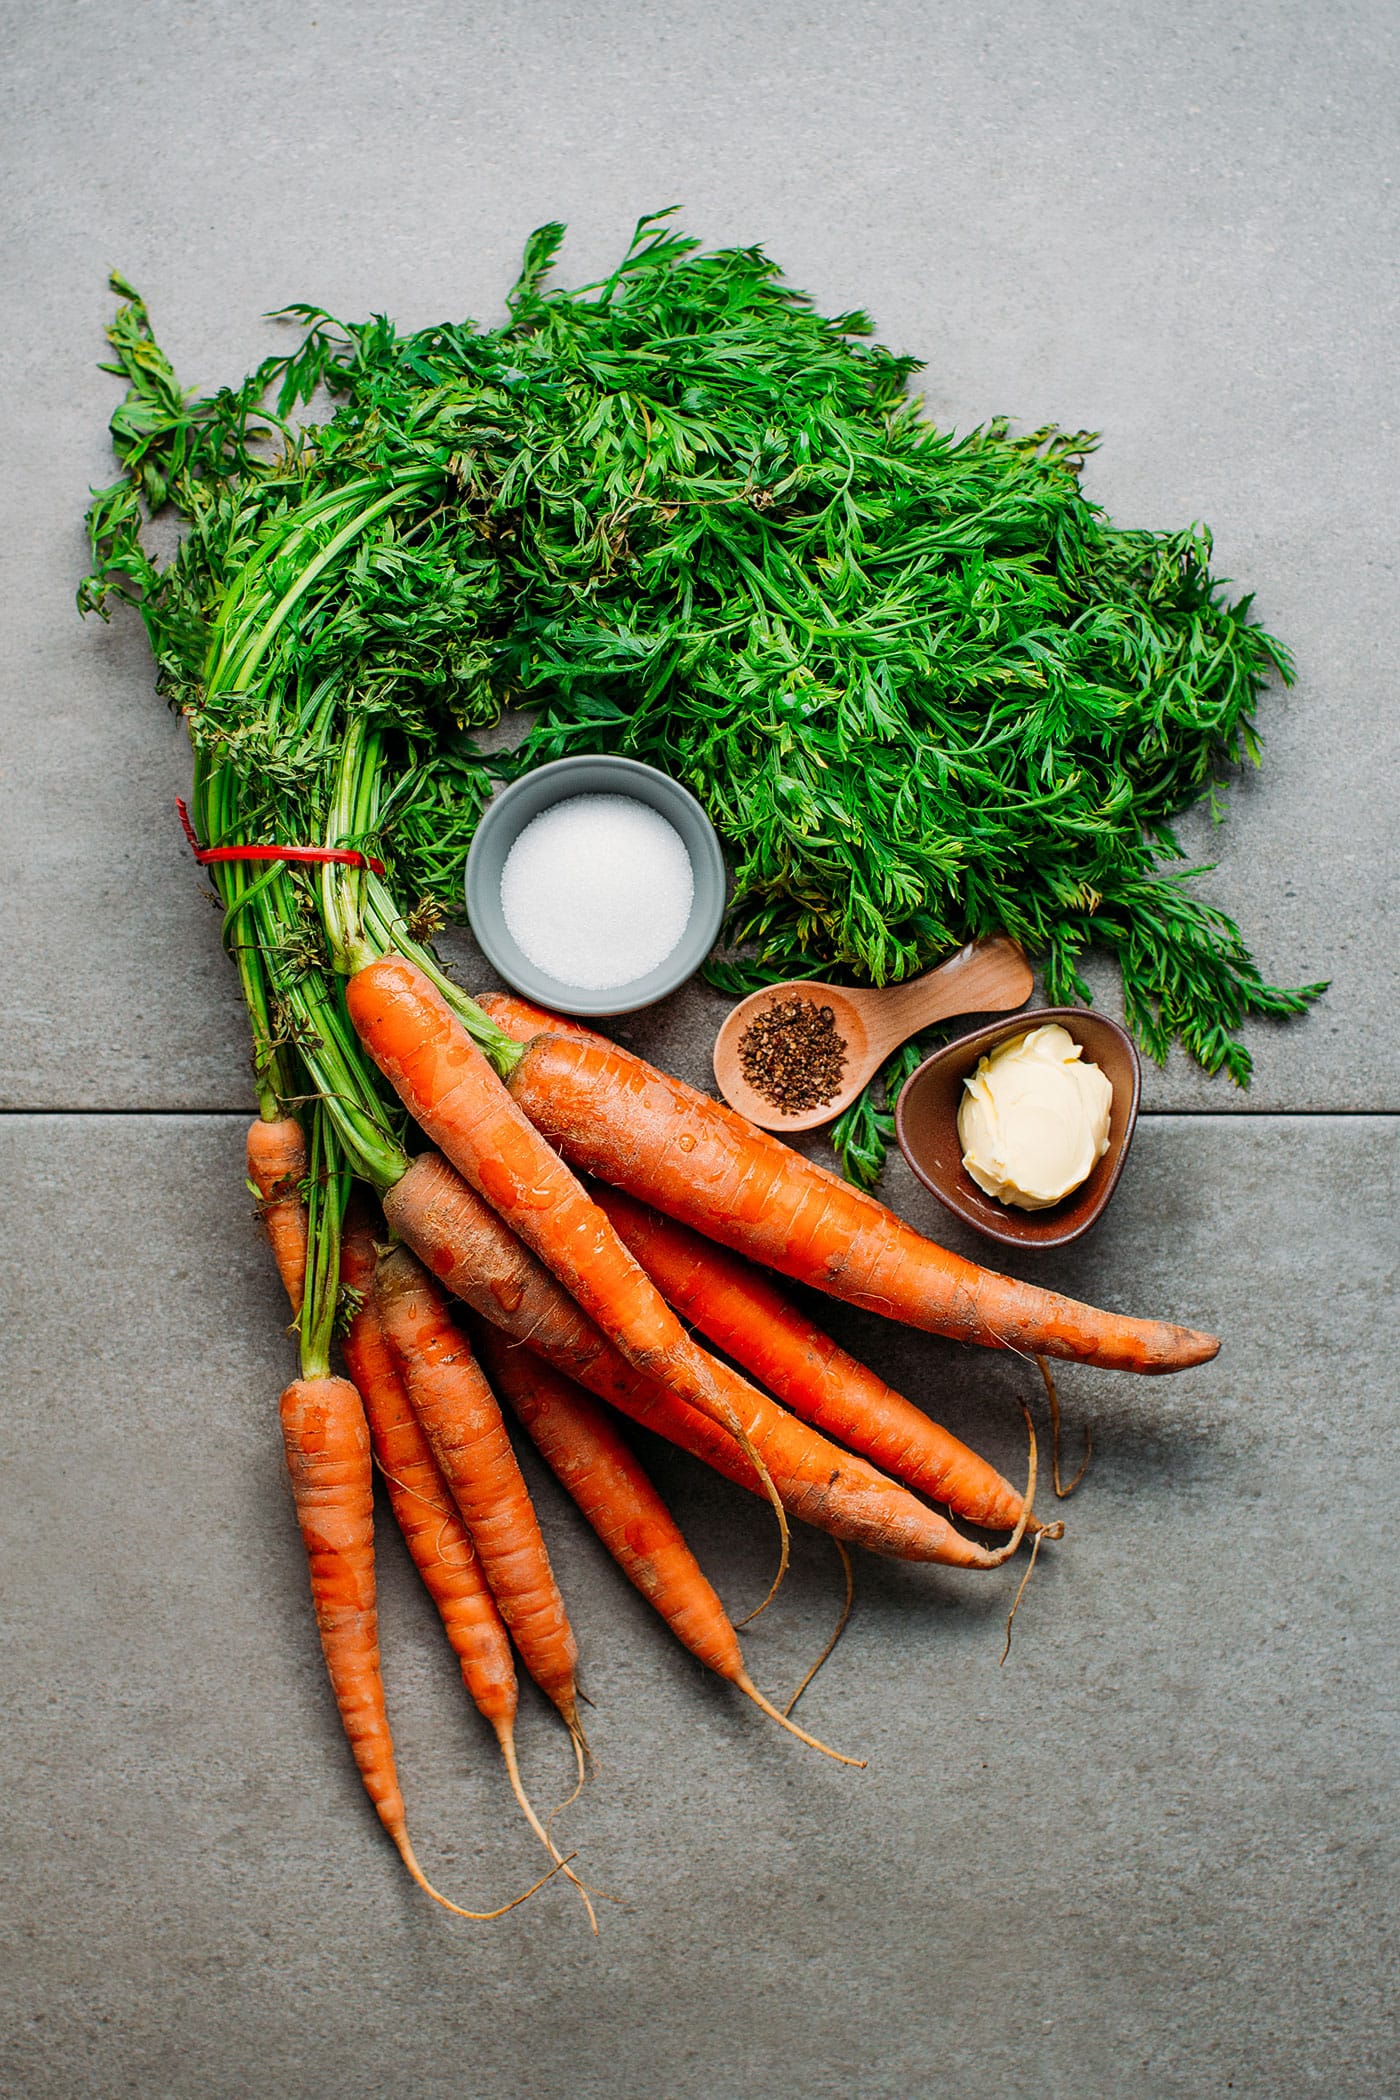 Easy Glazed Carrots (Carrots Vichy)